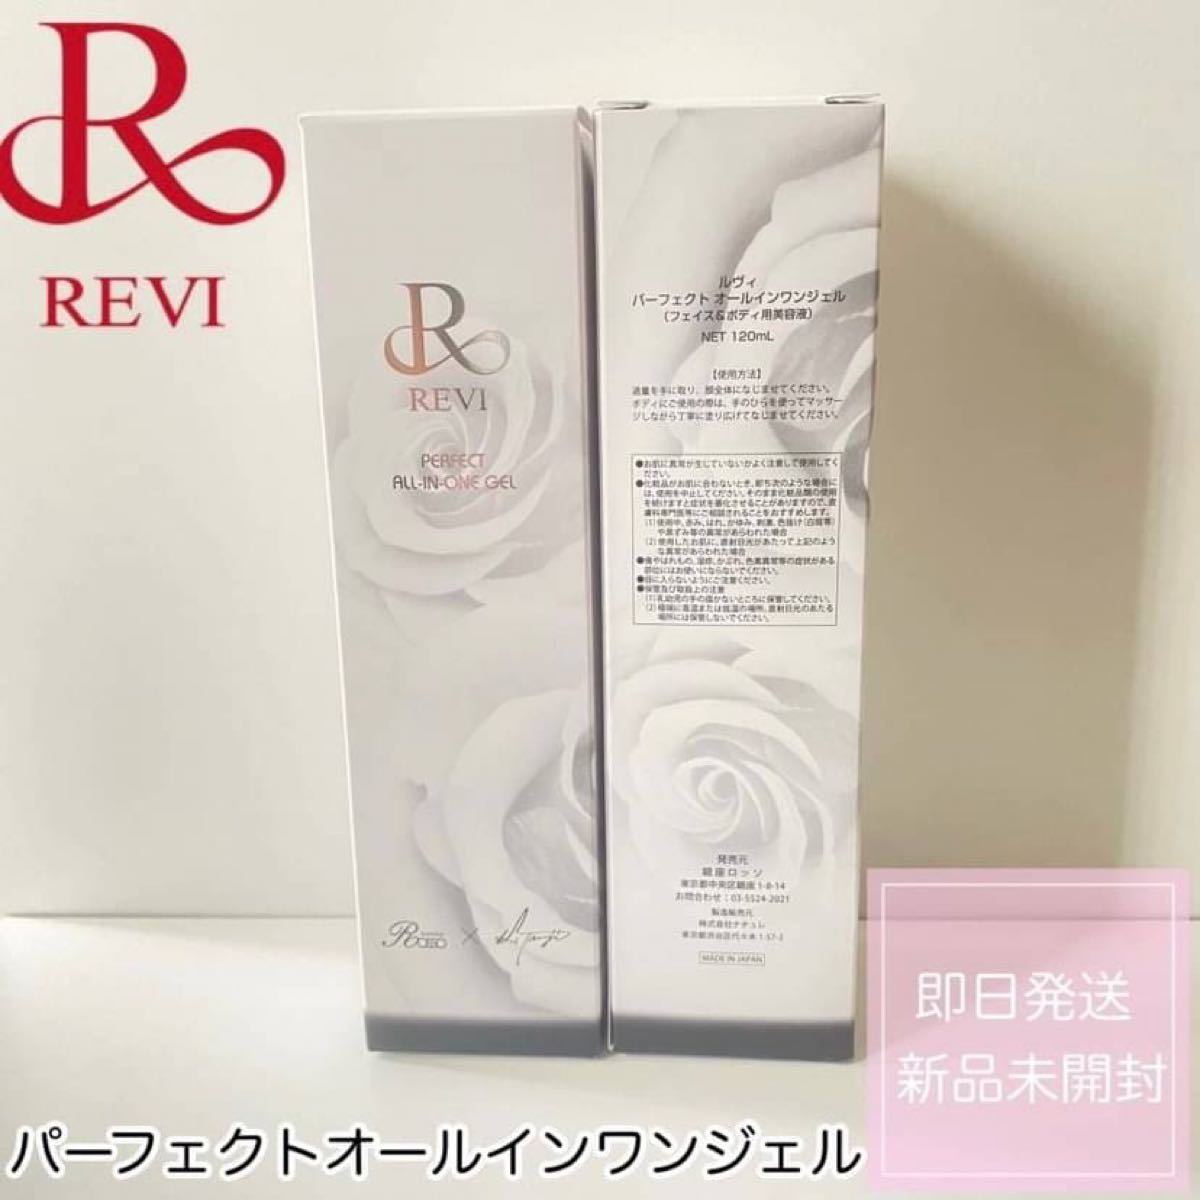 品質満点 REVI ルヴィ パーフェクトオールインワンジェル 基礎化粧品